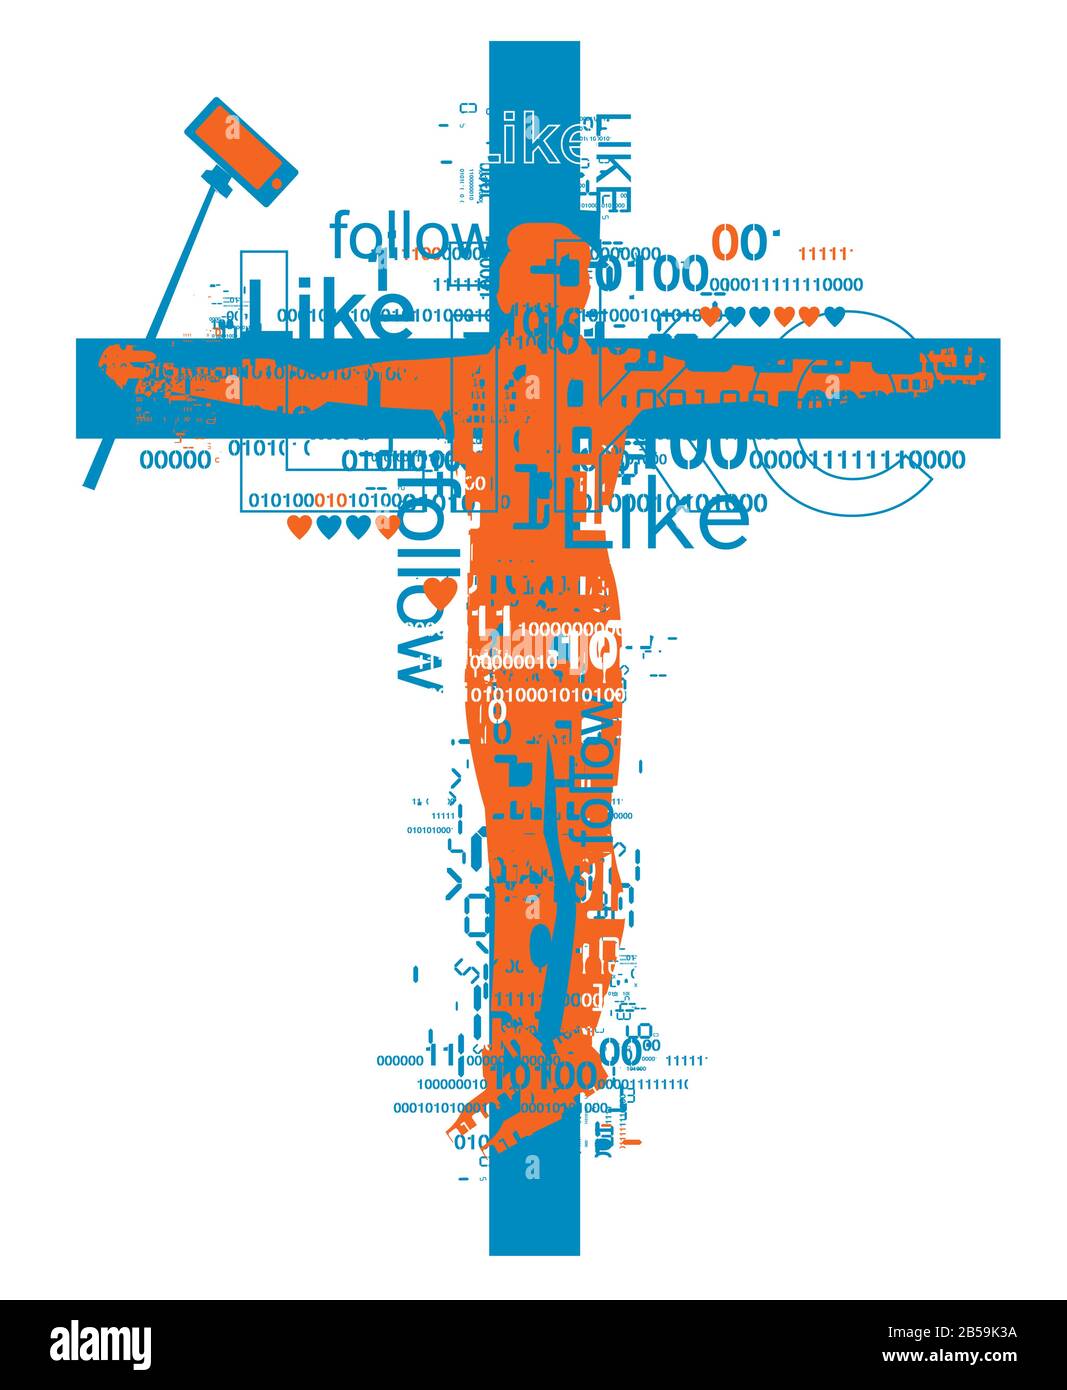 Uomo crocifisso con selfie rod, vittima della dipendenza dalle reti sociali . Grunge silhouette maschile stilizzata sulla croce, con codici binari e segni simili. Illustrazione Vettoriale